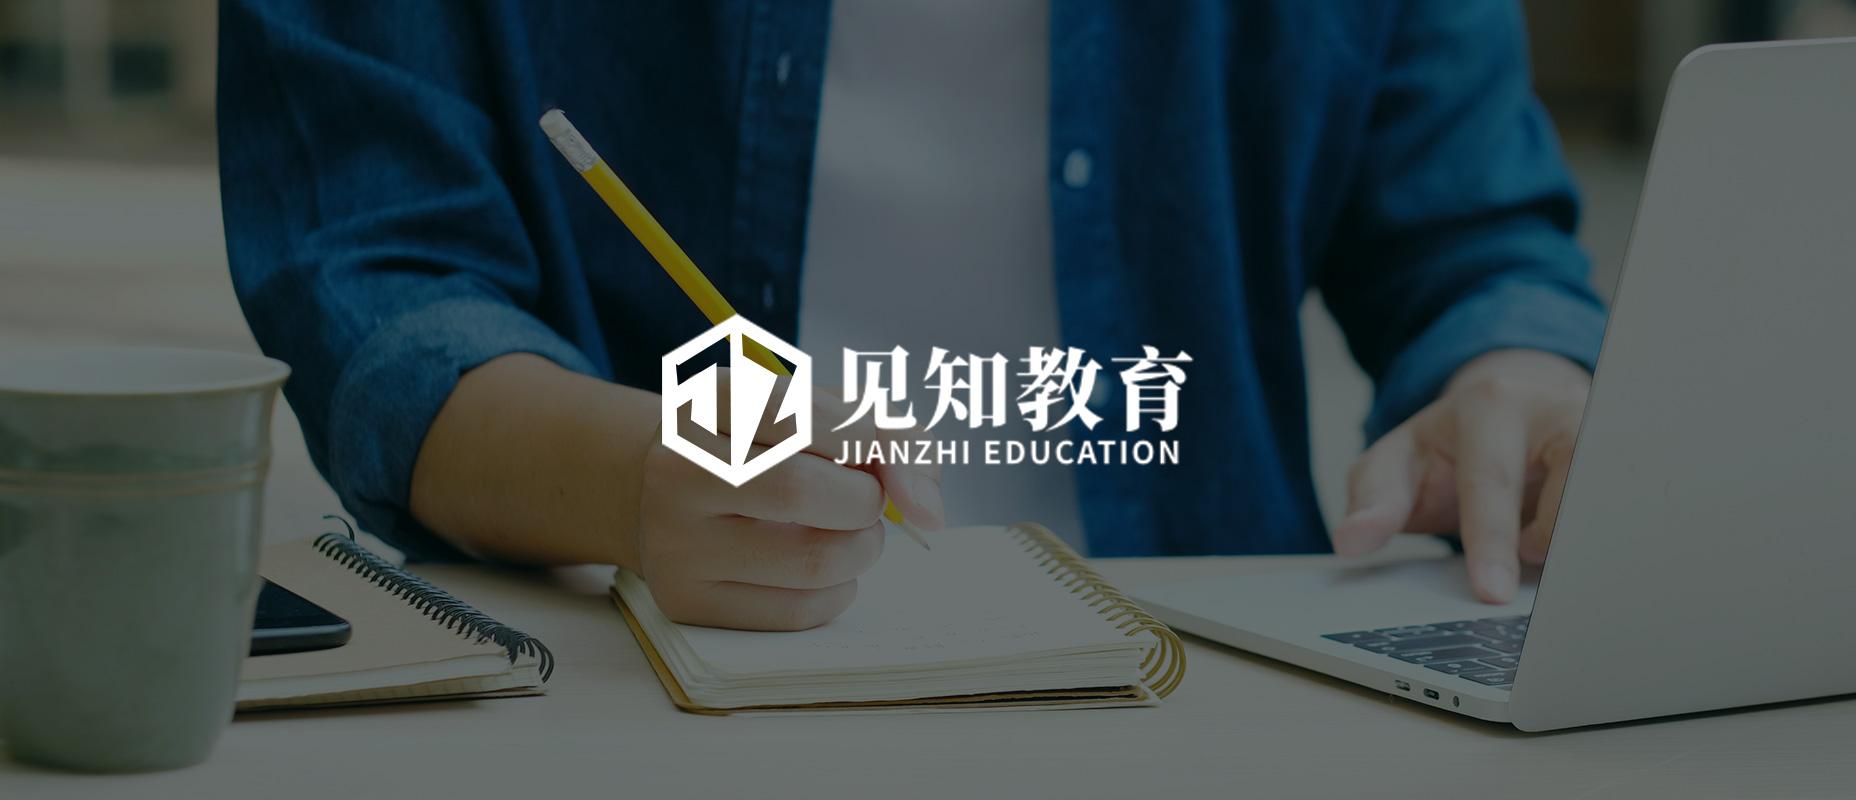 IPO di Jianzhi Education Technology: piattaforma educativa dalla Cina